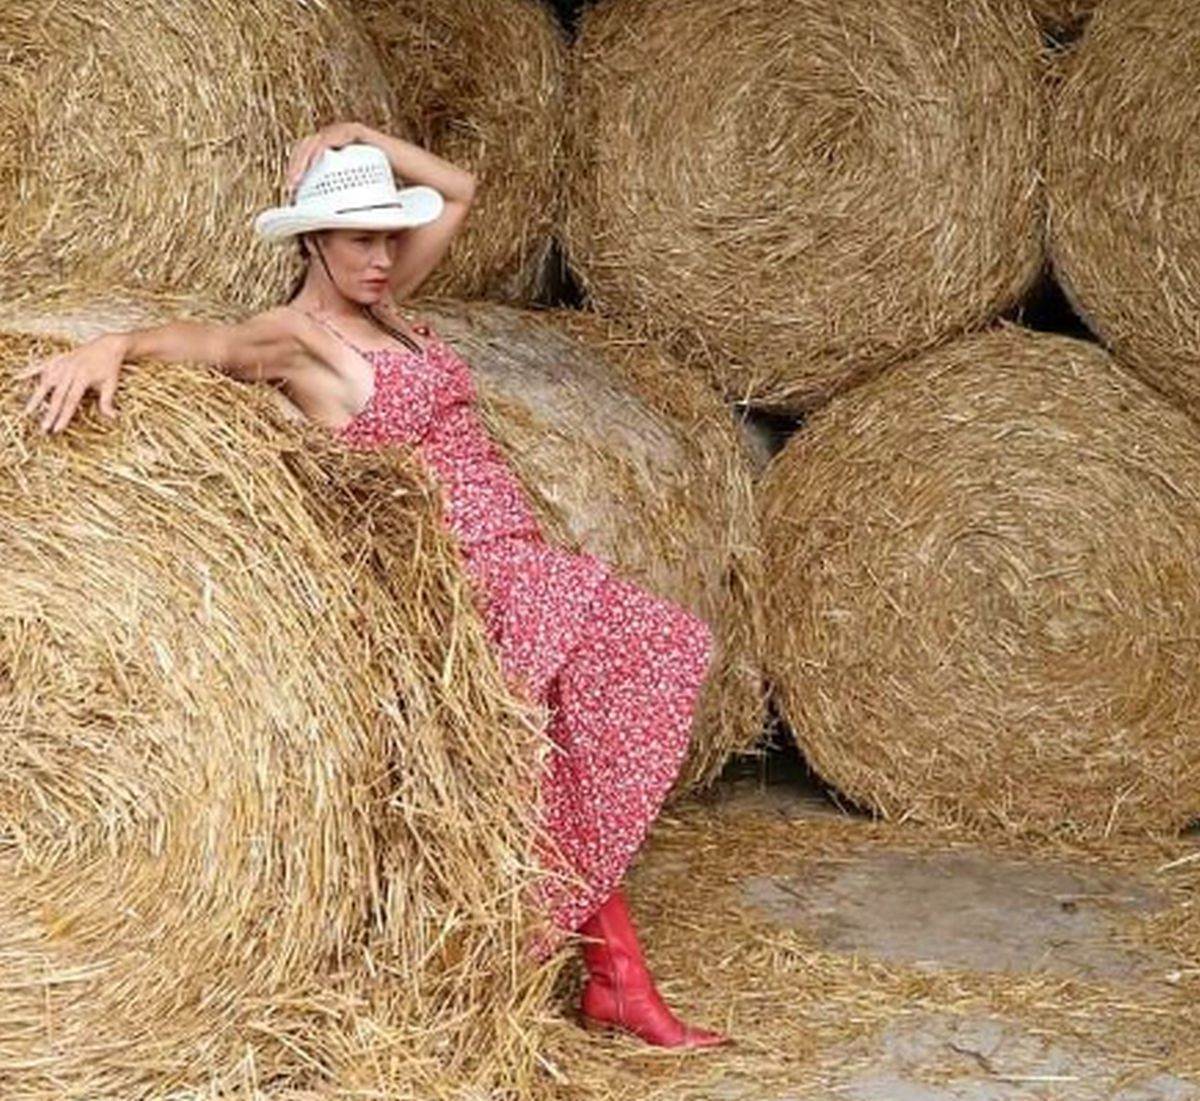  Ivana Banfić živi na selu i bavi se poljoprivredom 